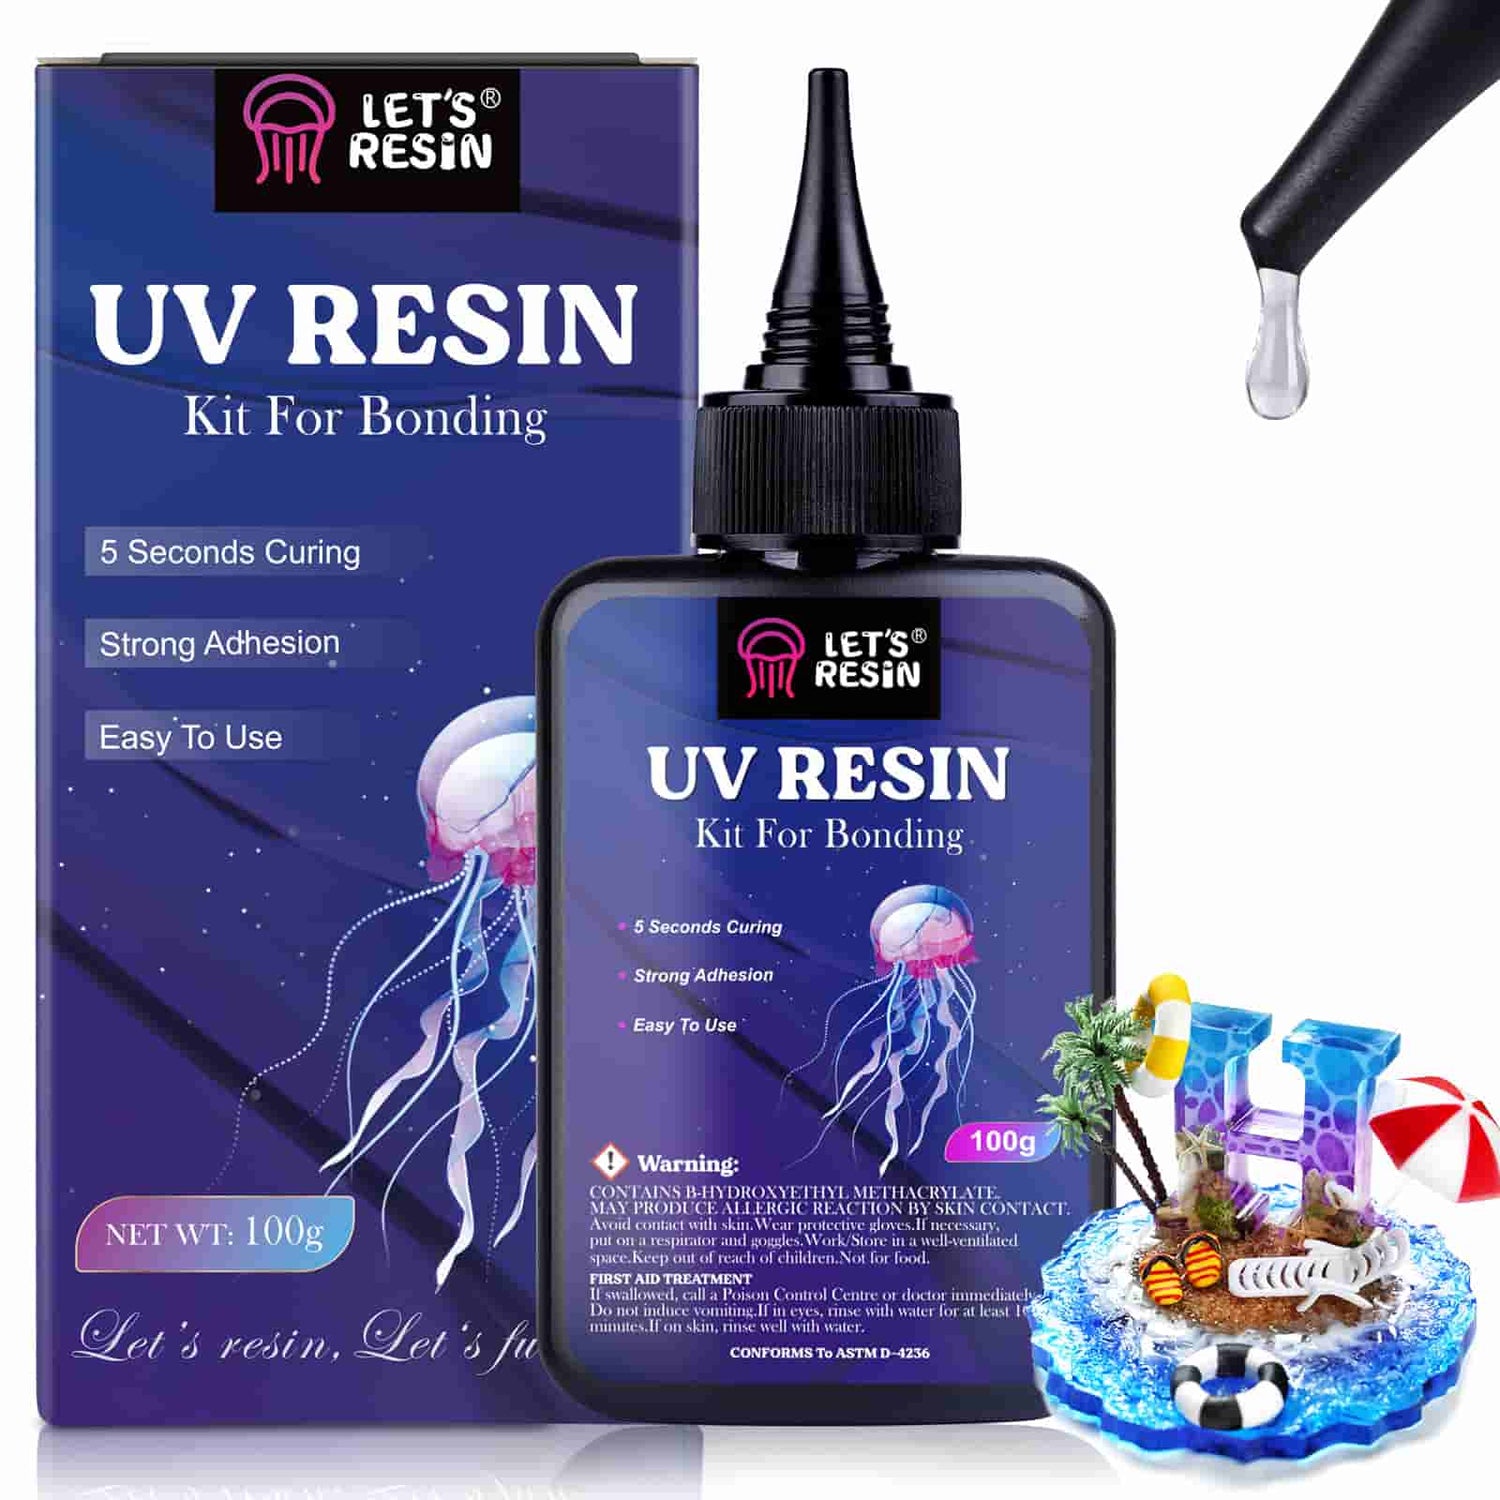 LET'S RESIN UV Resin Kit with Light, Bonding&Curing in Seconds, 25g UV Resin  Kit